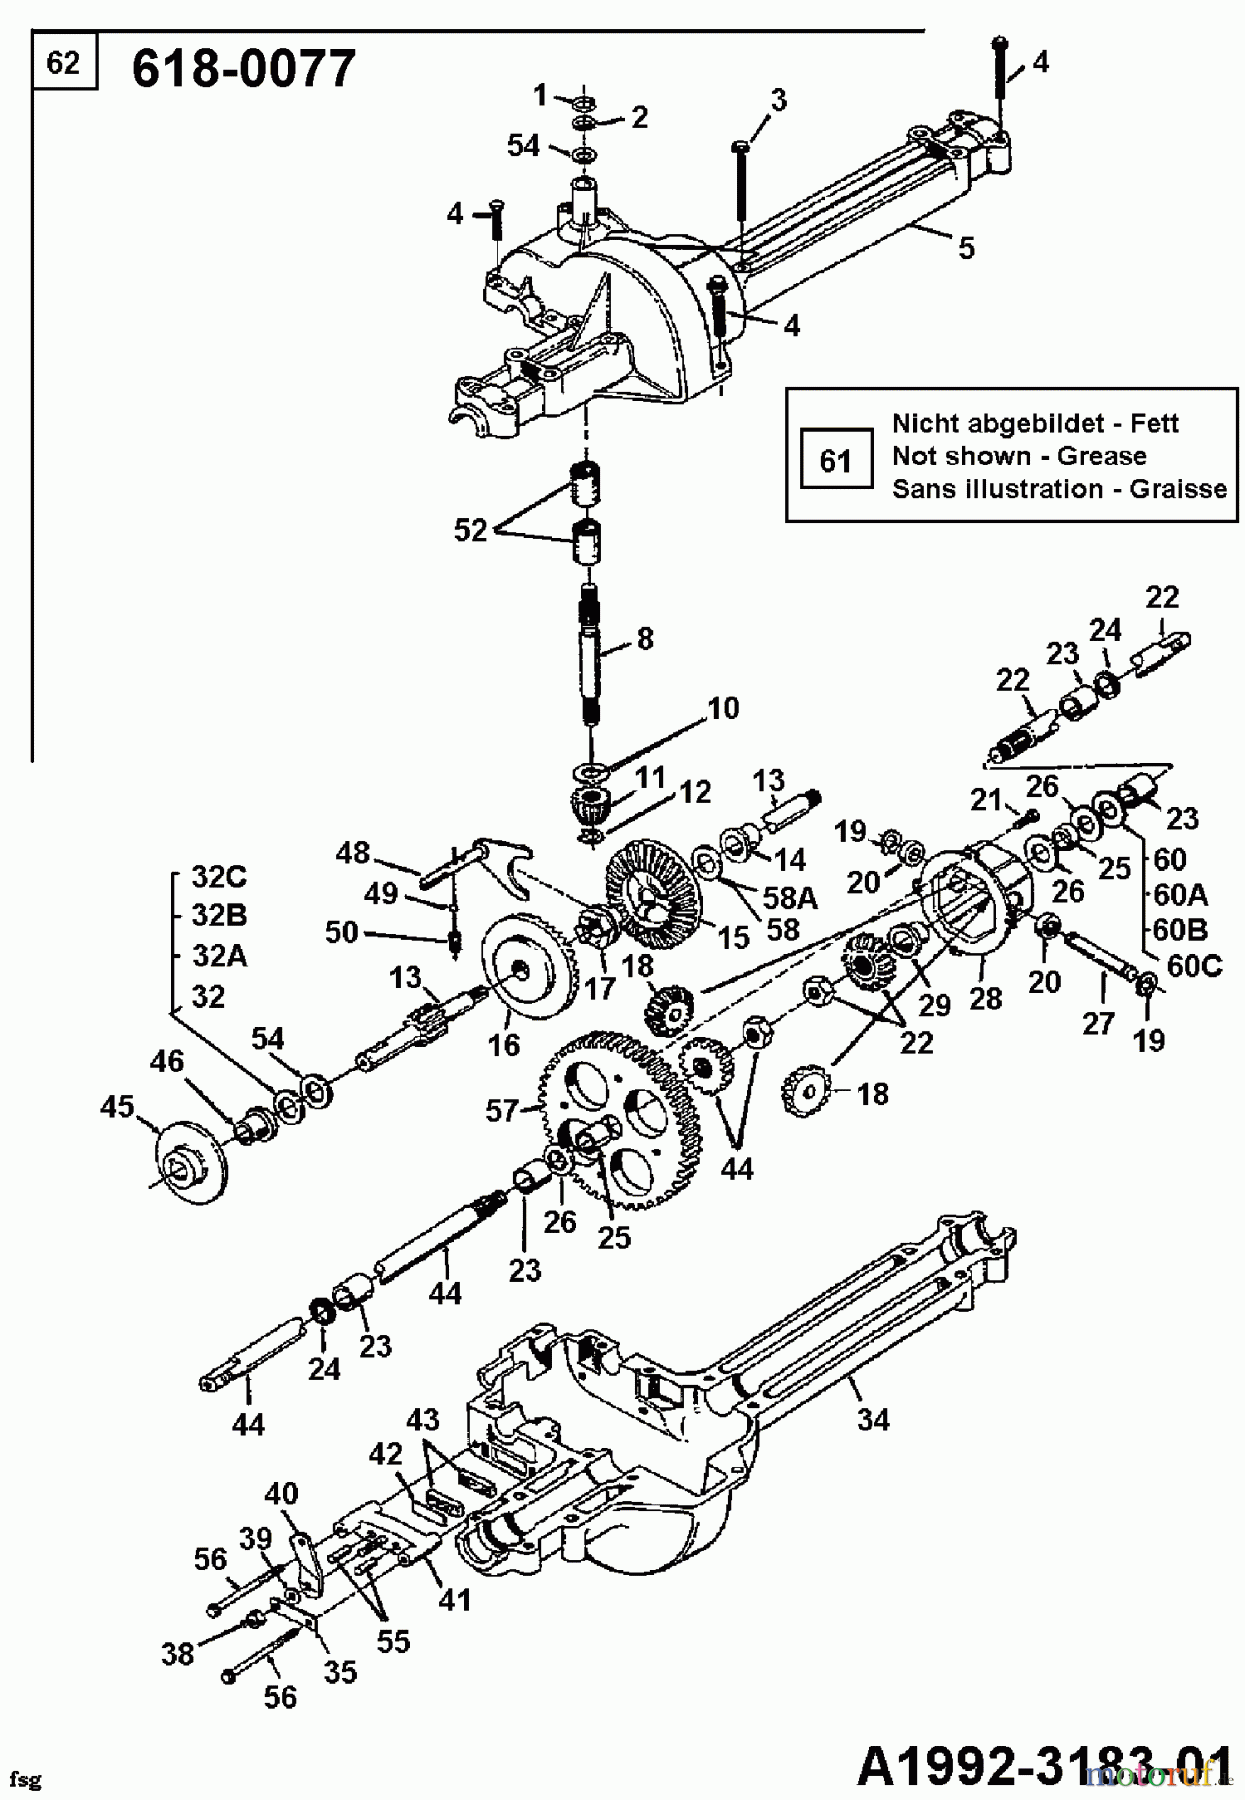  Golf Lawn tractors TOPFLITE B 10 135B452D648  (1995) Gearbox 618-0077